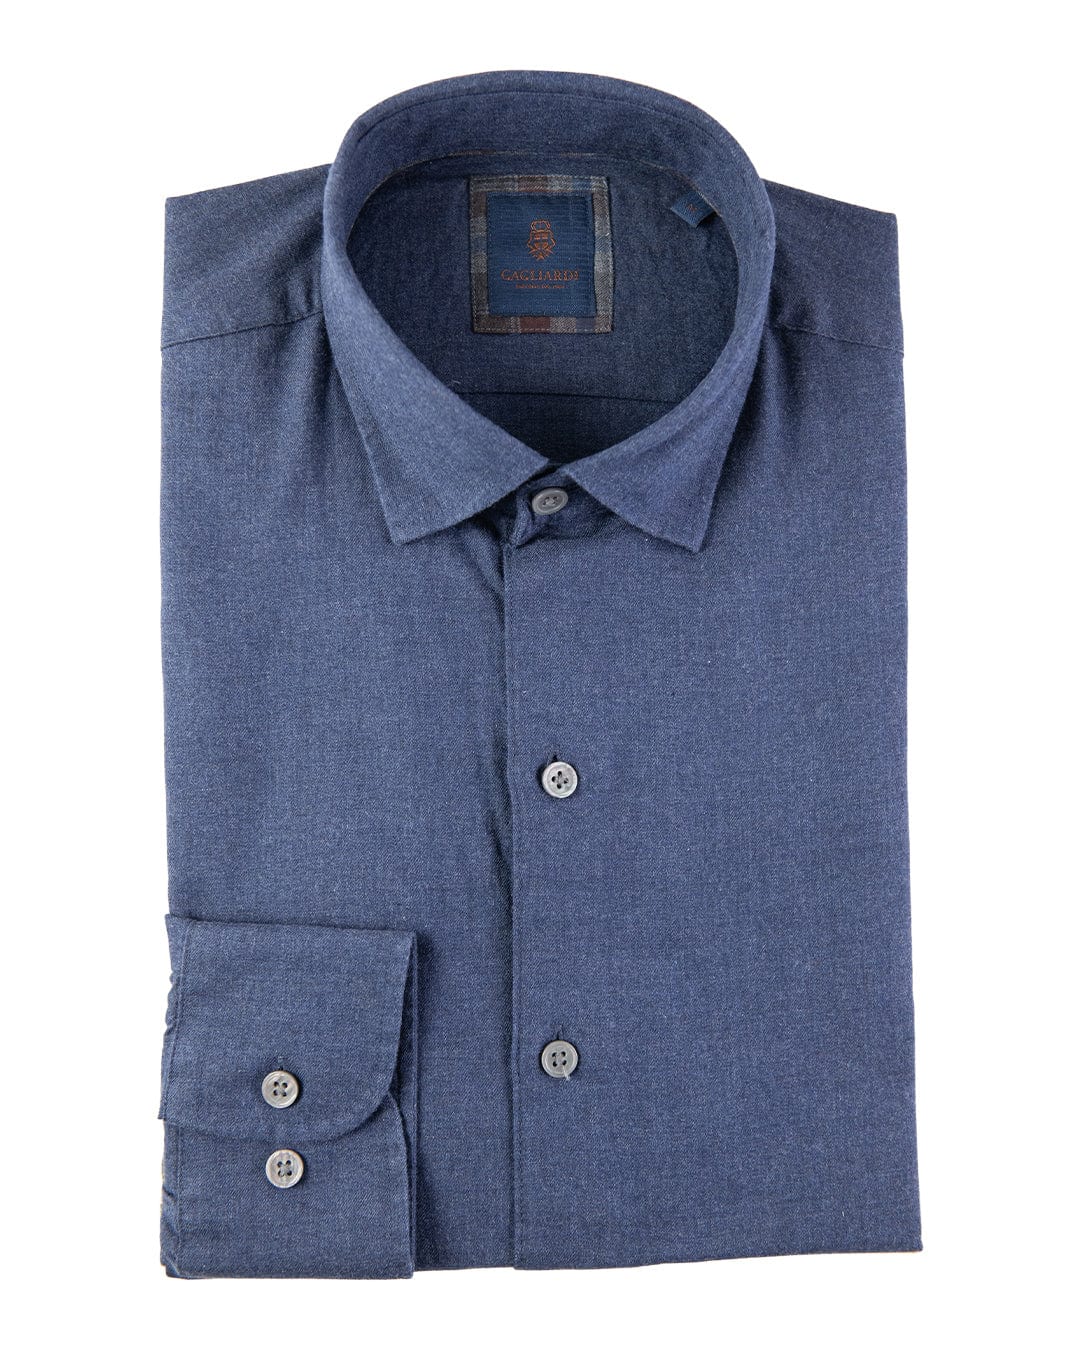 Gagliardi Shirts Gagliardi Blue Cotton Flannel Shirt